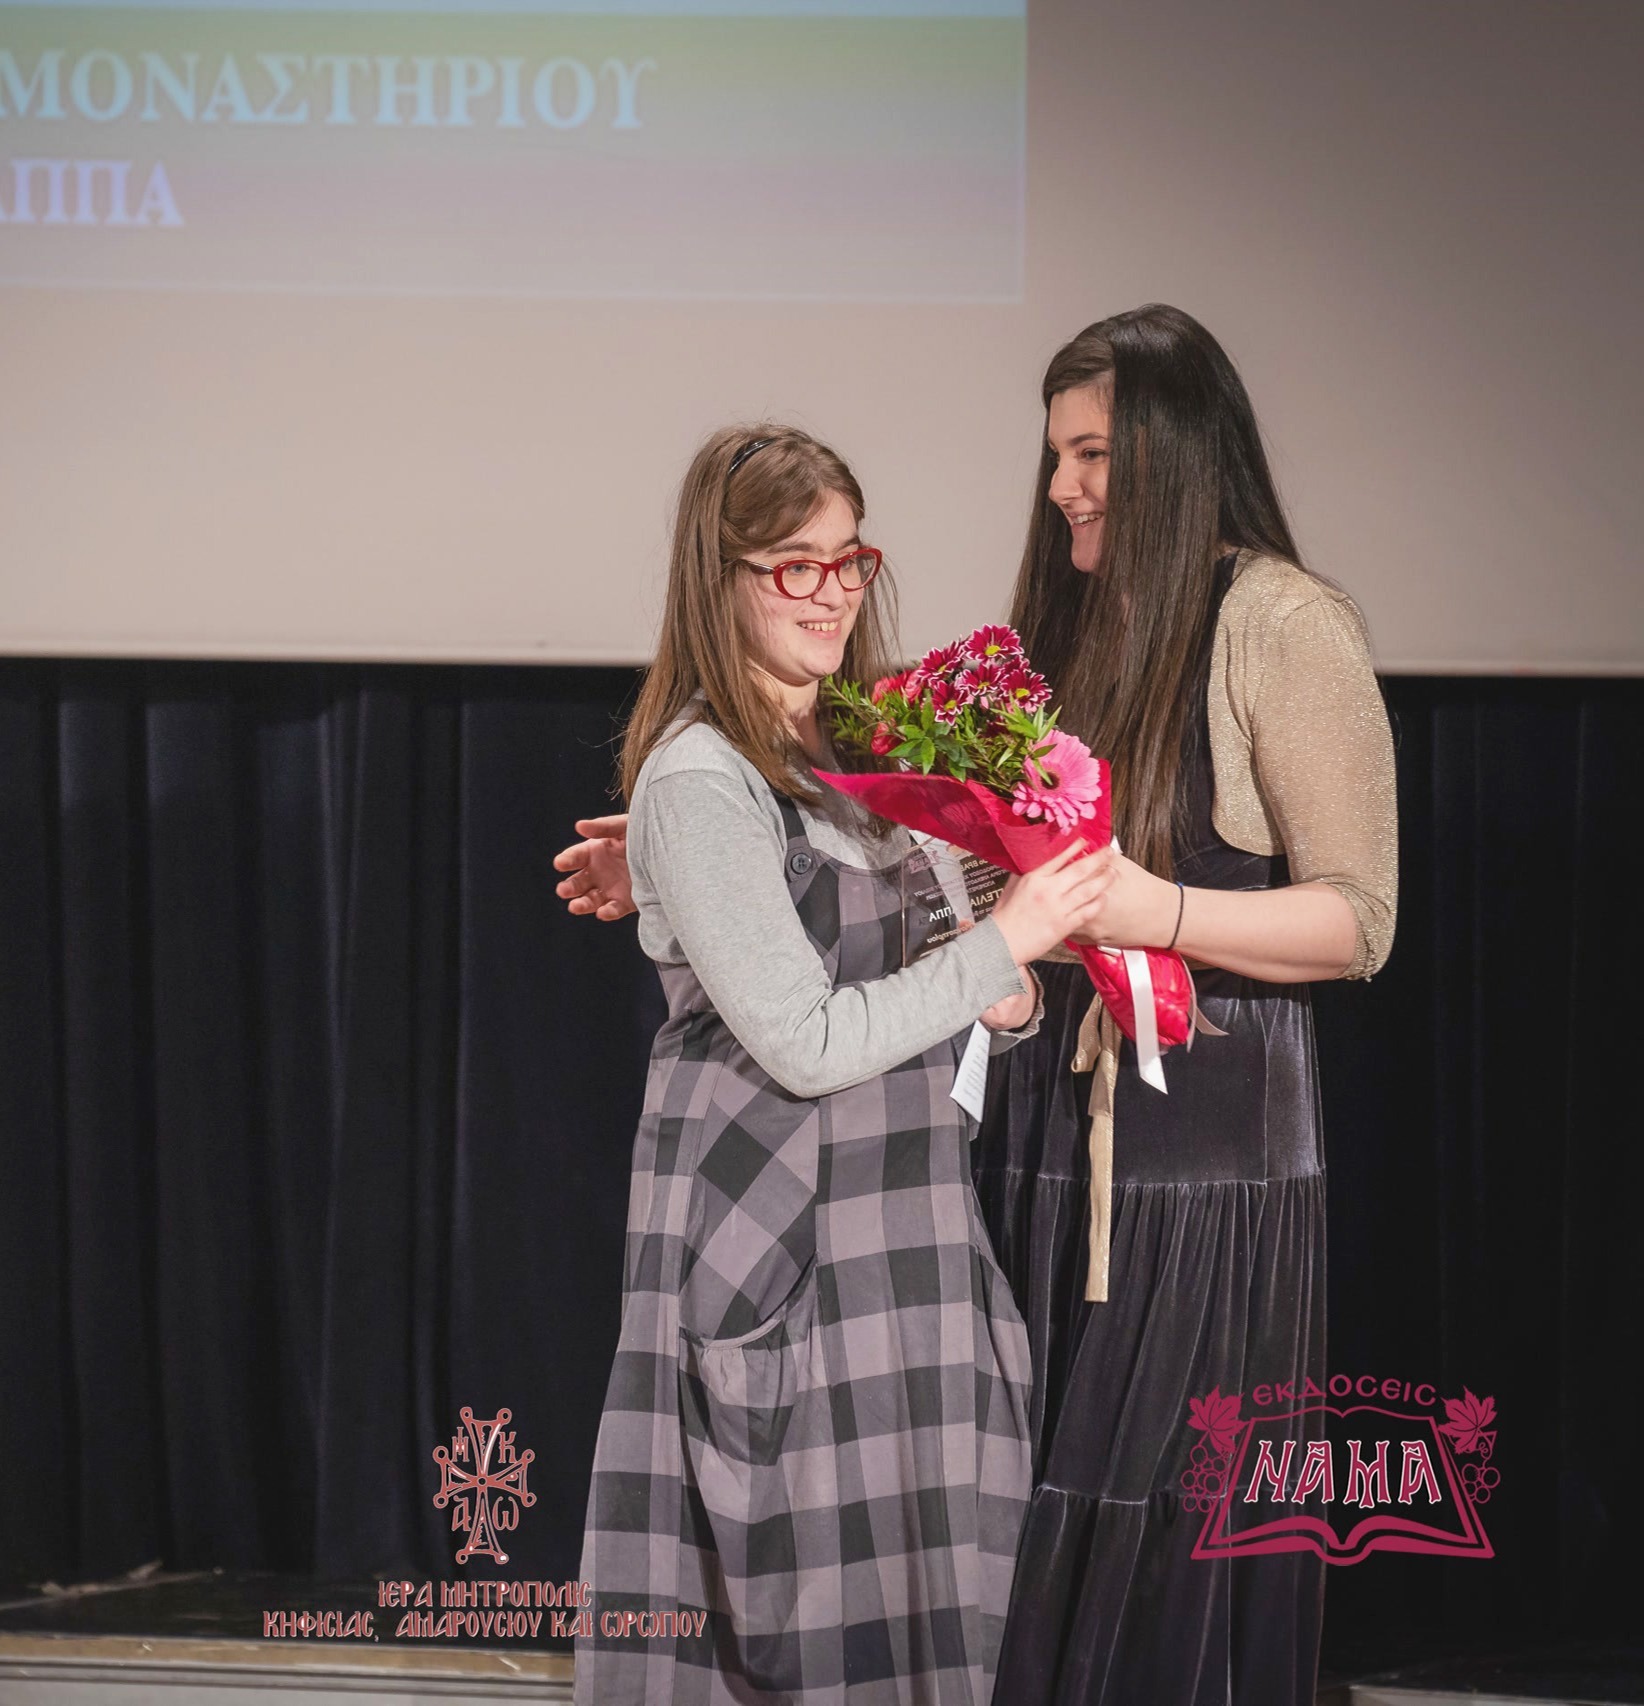 Η μαθήτρια Λυκείου Ευαγγελία Λάππα παραλαμβάνει το βραβείο από τη συγγραφέα και θεολόγο κυρία Ιωάννα Σκαρλάτου.